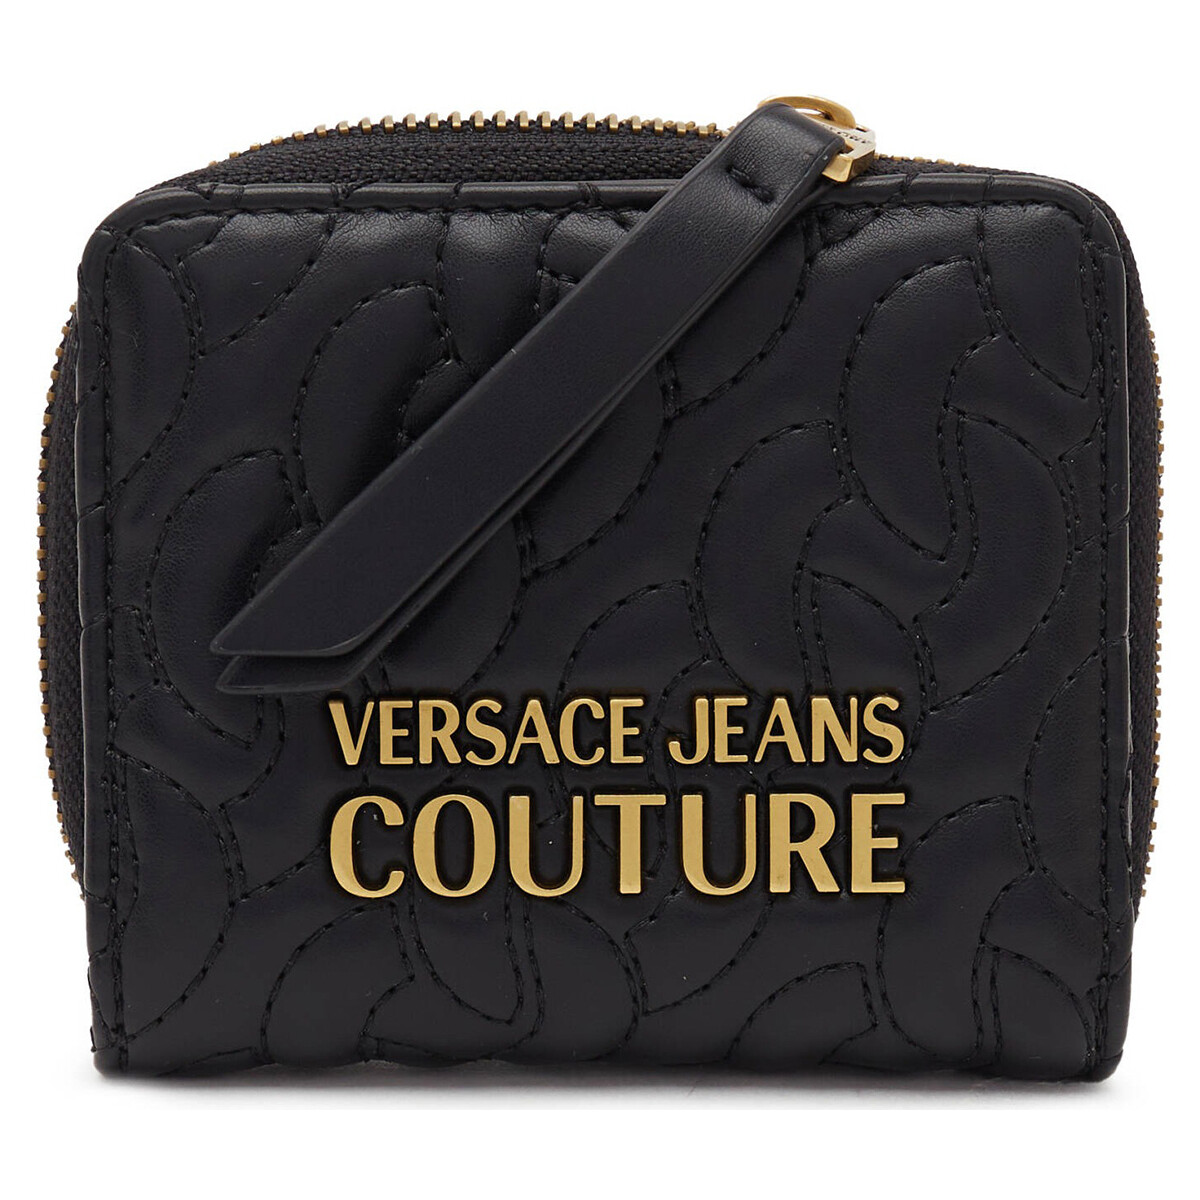 Versace Jeans Couture Noir 75va5pa2zs803-899 aIDc8yW8